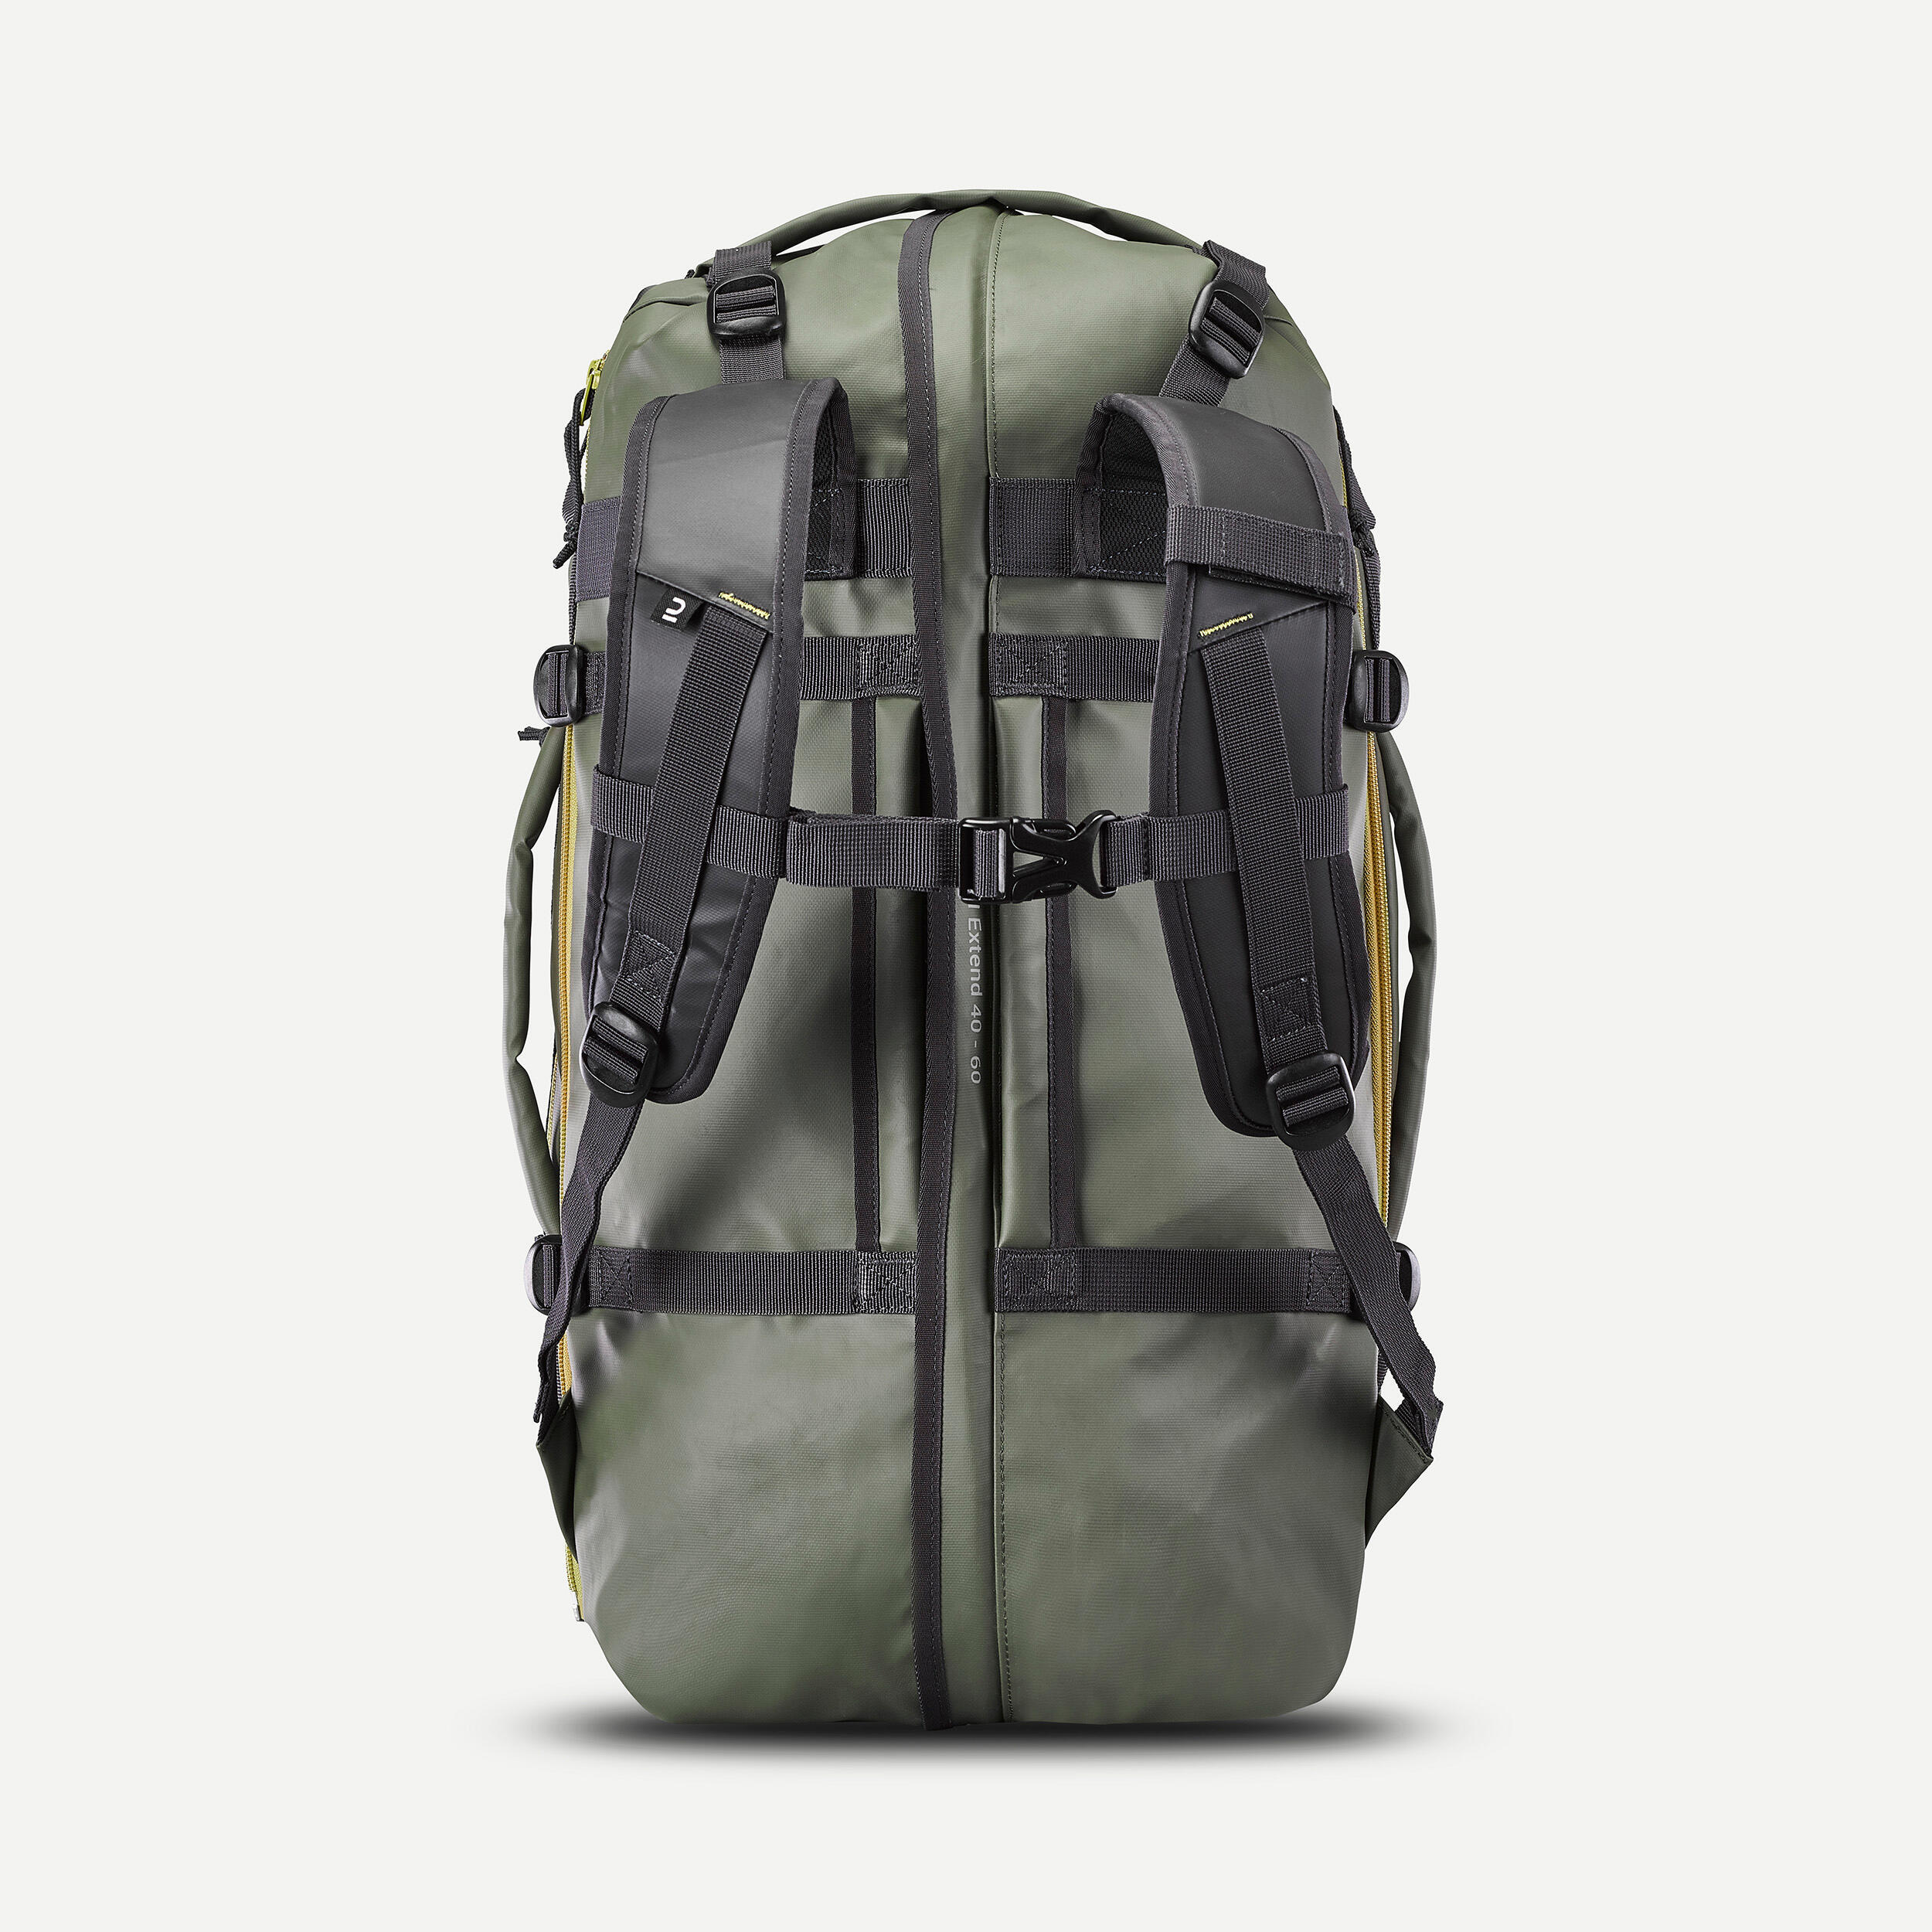 Trekking Carry Bag - 40 L to 60 L - DUFFEL 500 EXTEND 5/9